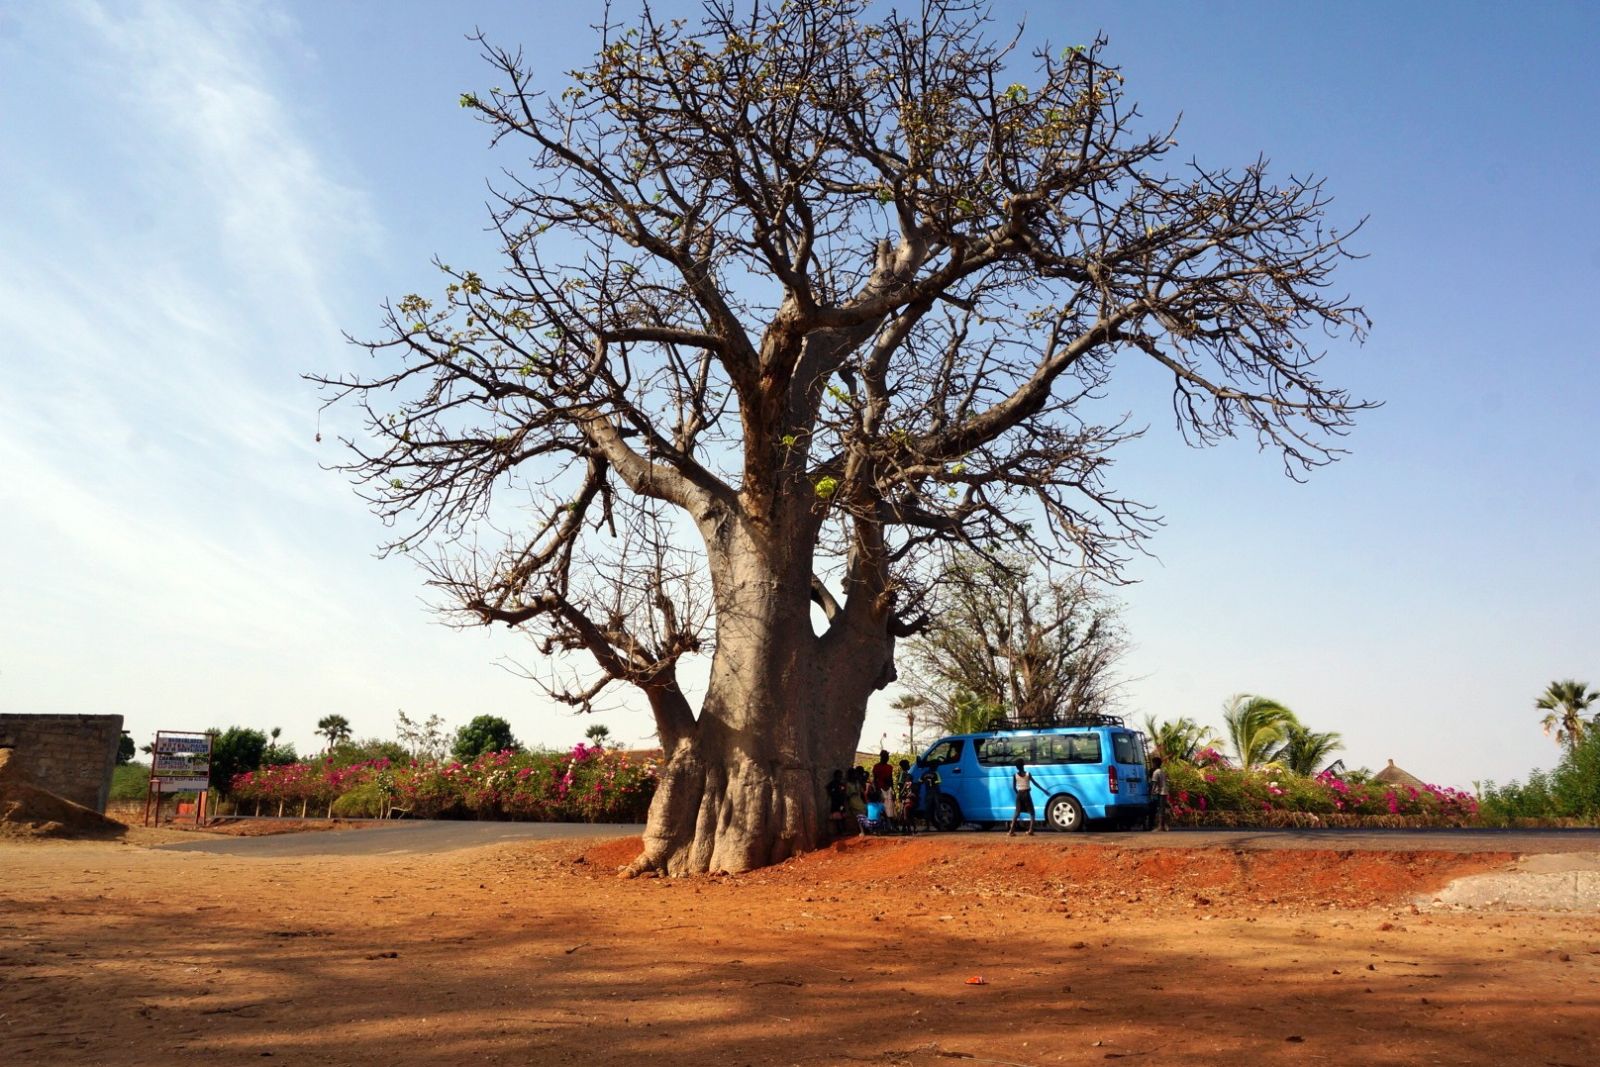 unser Bus am Baobab-Baum